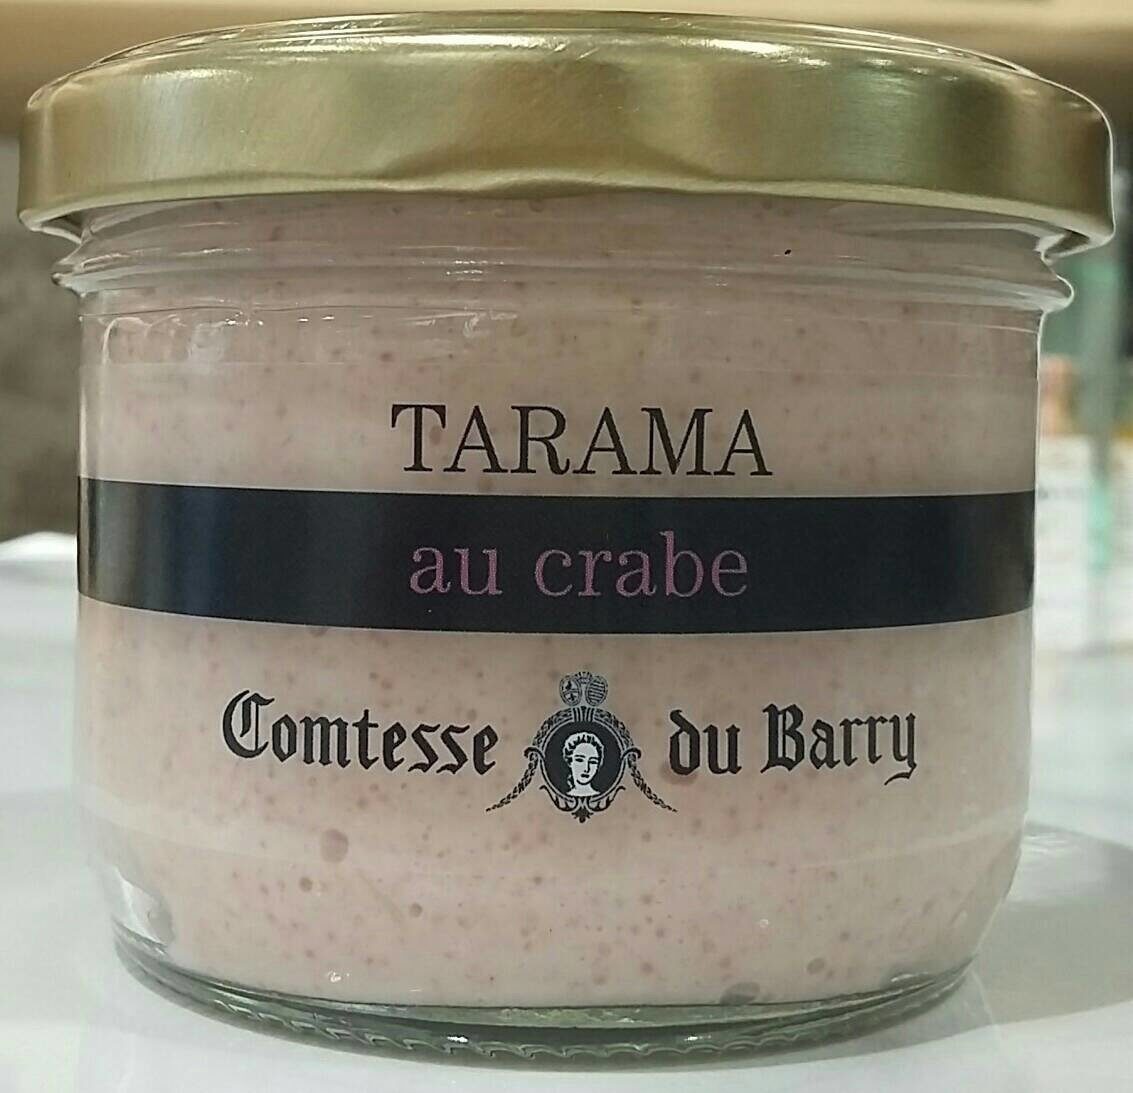 Tarama au crabe - Product - fr